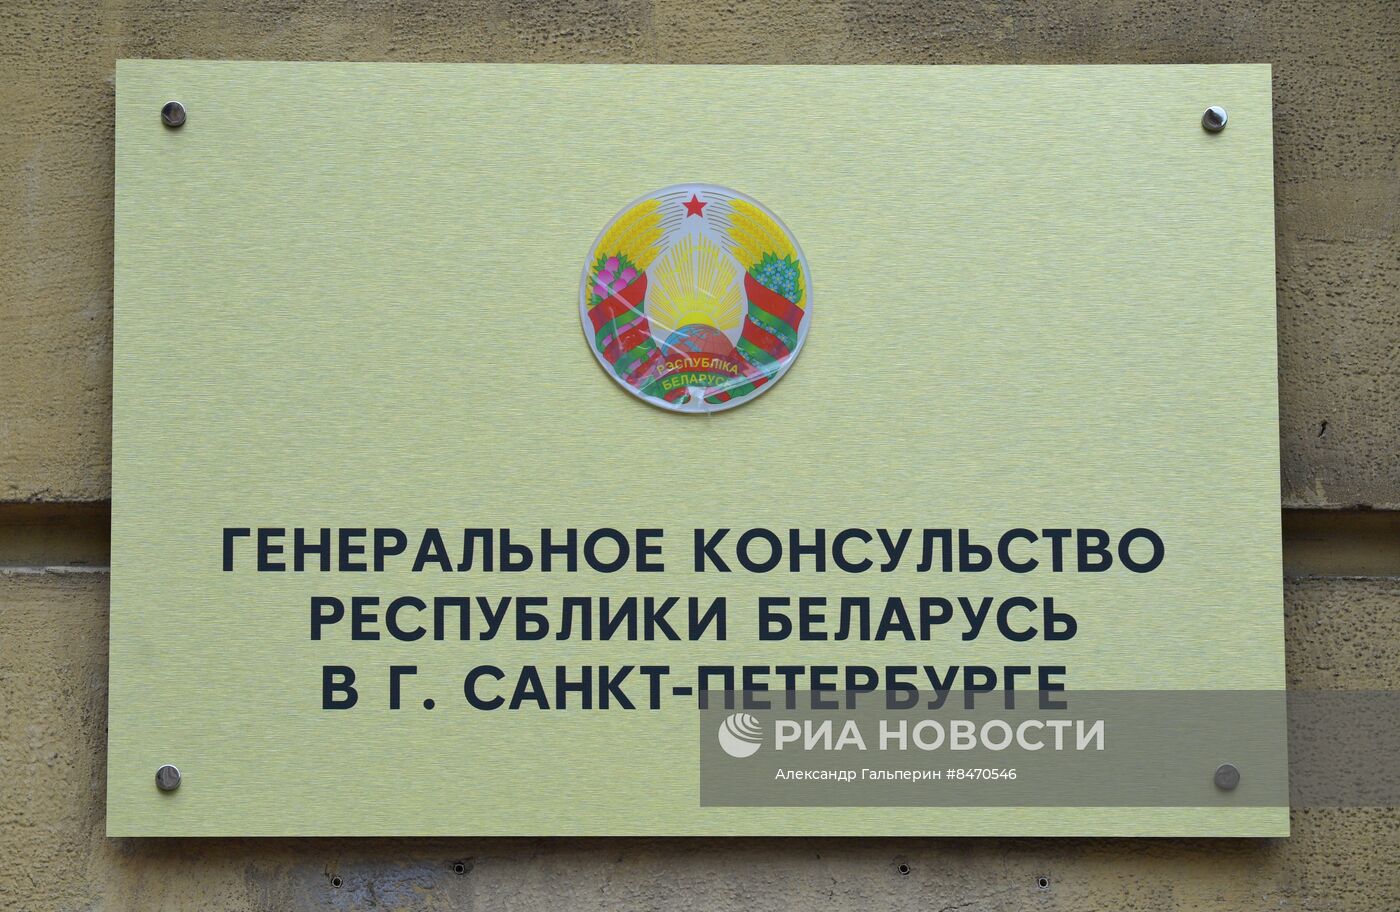 Открытие Генконсульства Республики Беларусь в Санкт-Петербурге